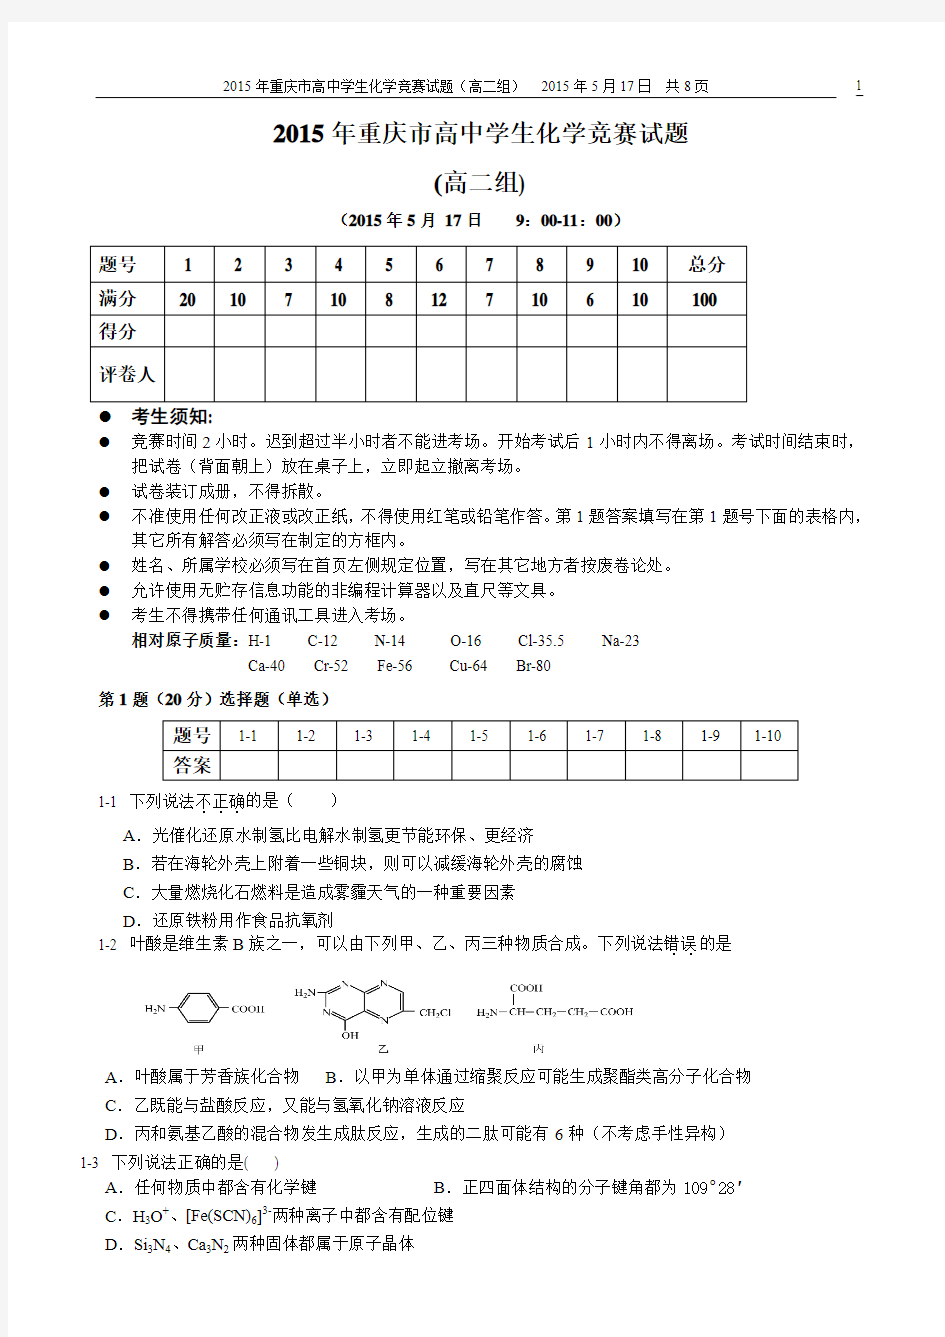 高二组--2015年重庆市高中学生化学竞赛试题2015.4